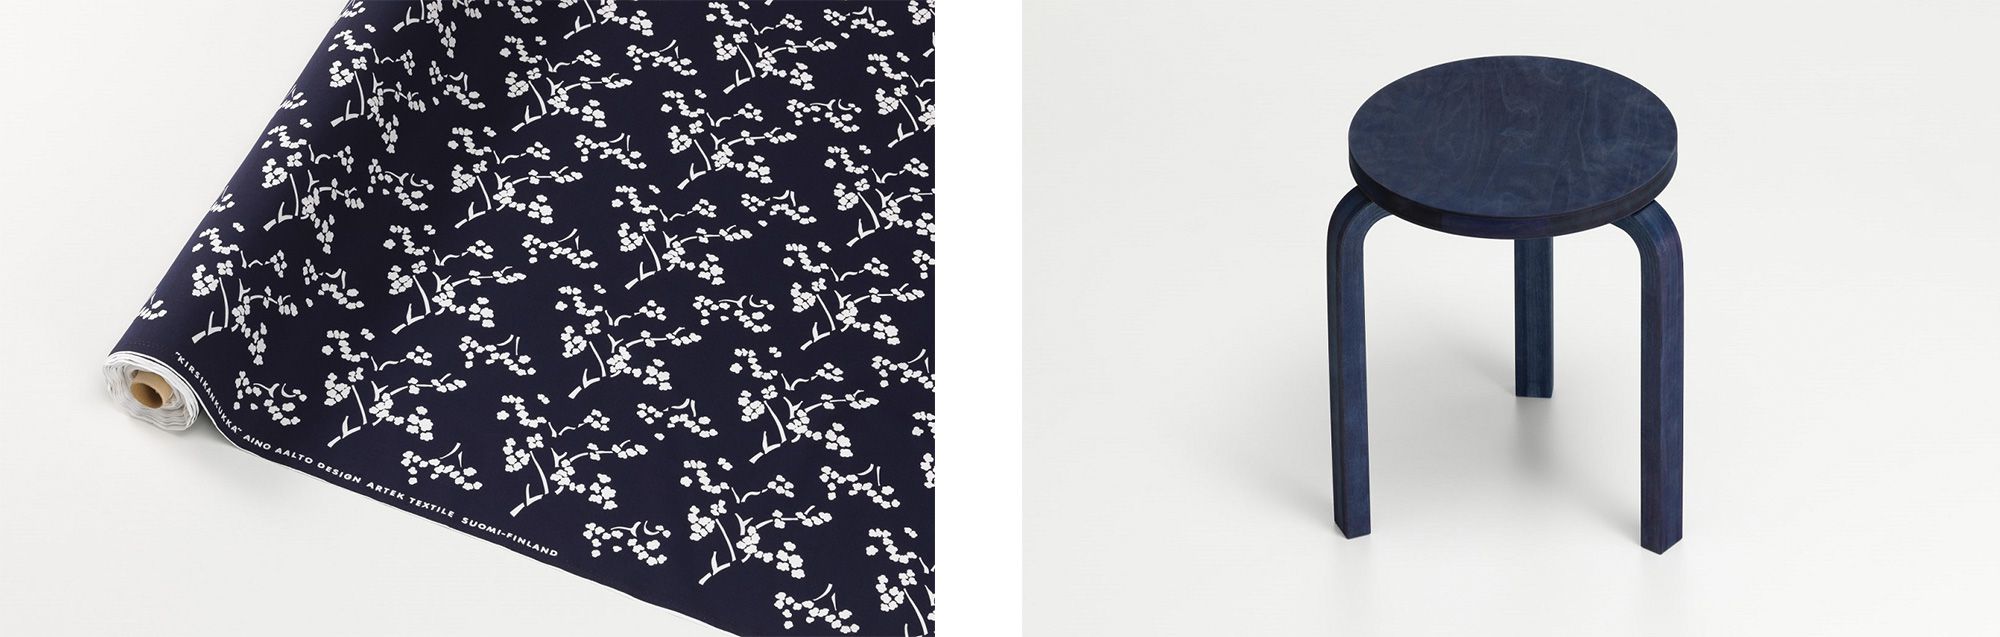 （左）桜の花を意味するテキスタイルデザイン「キルシカンクッカ」を復刻。（右）フィンランド産バーチ材をそのままジャ パンブルーに染め上げた「スツール 60 藍染」。共にミラノで発表された FIN/JPN フレンドシップ コレクション 